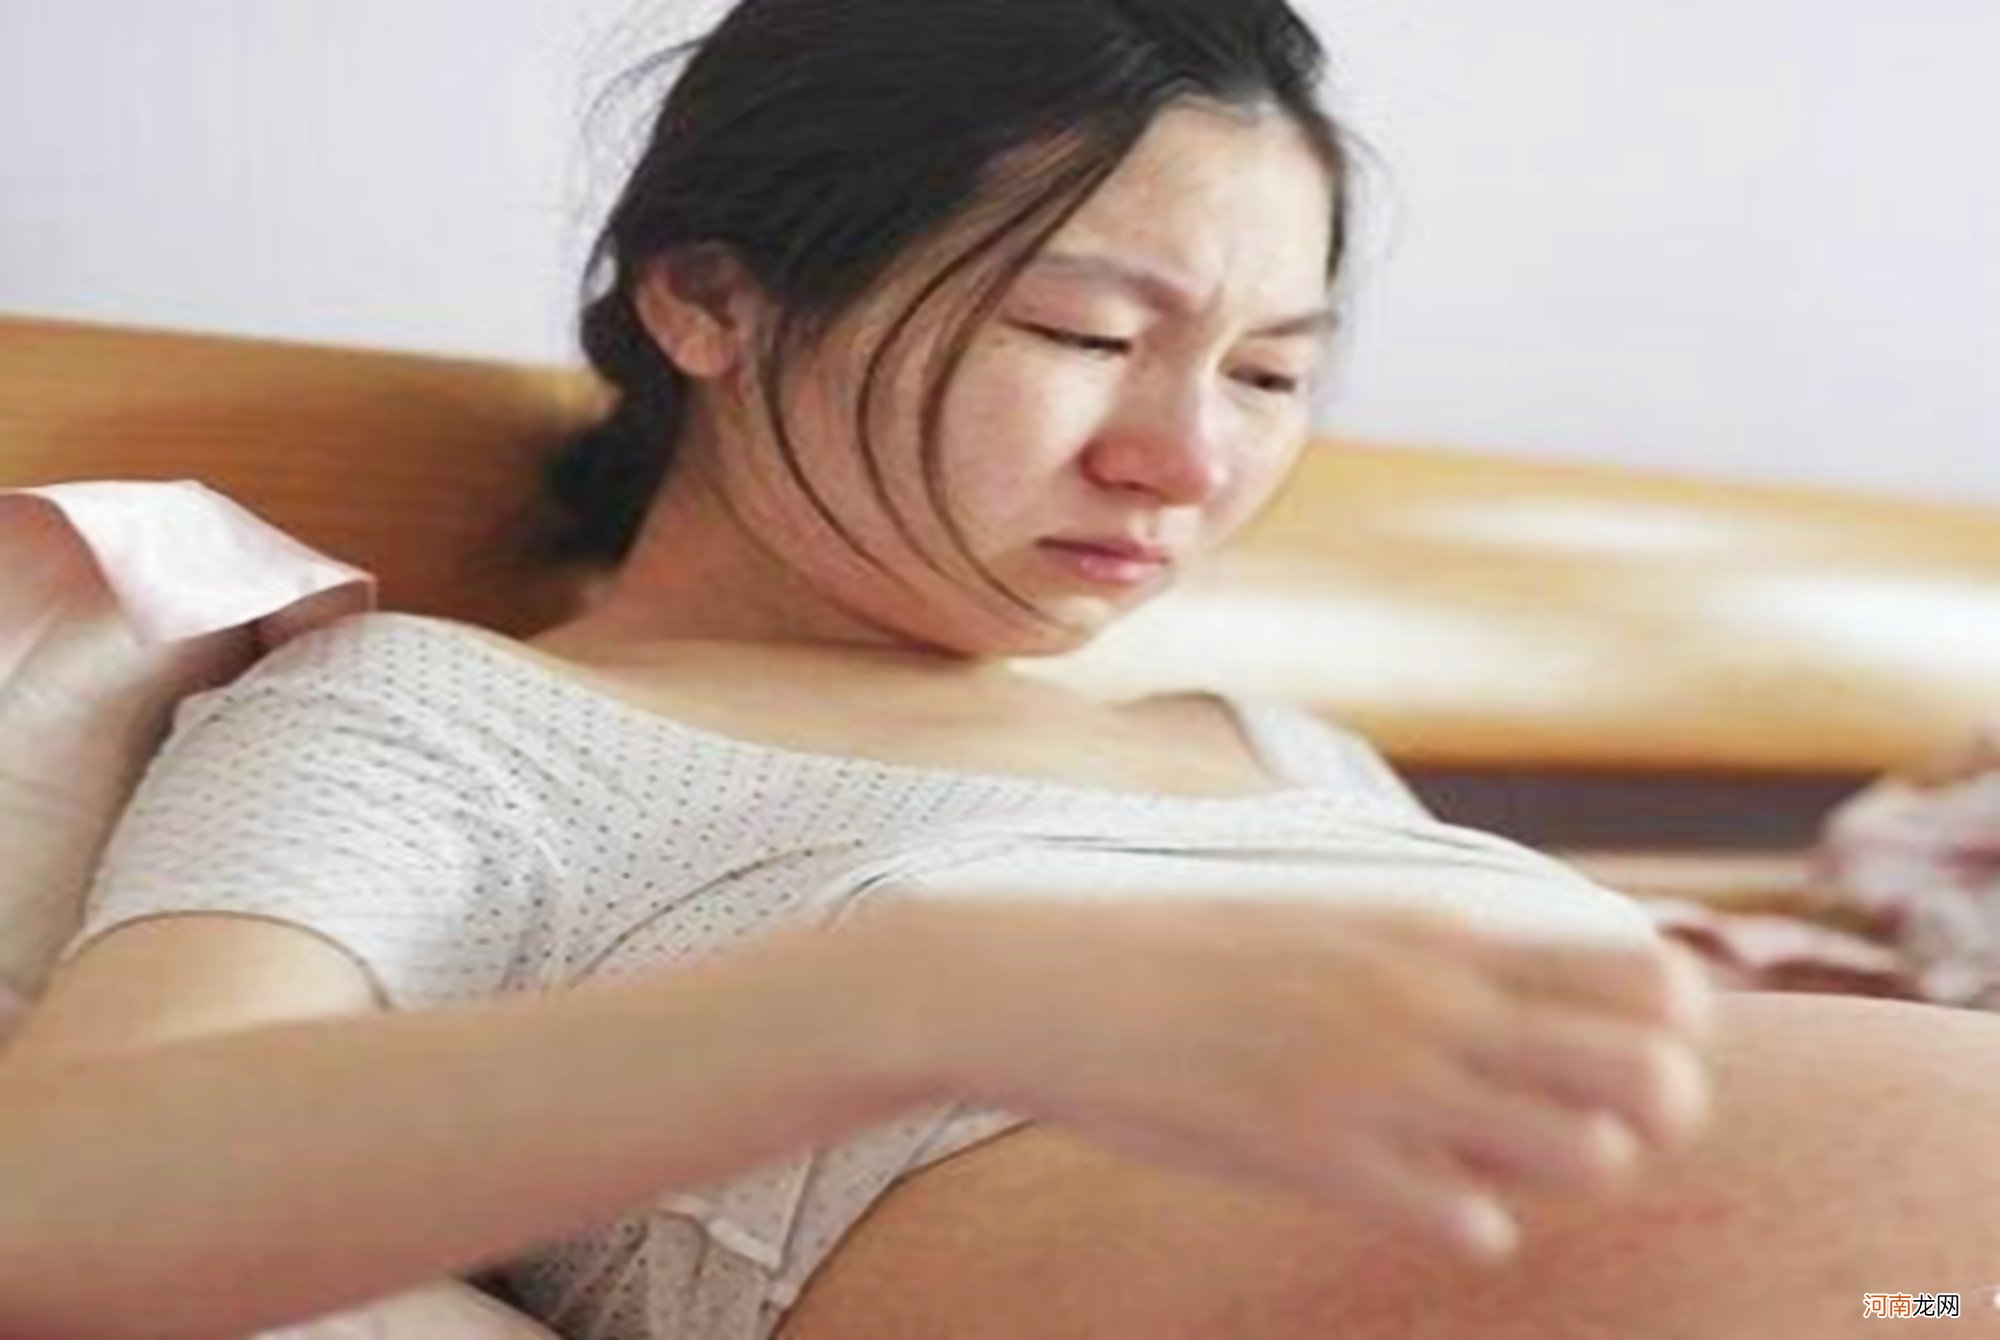 孕晚期“辗转难眠”可能诱发“脐带绕颈”，改善睡眠质量刻不容缓